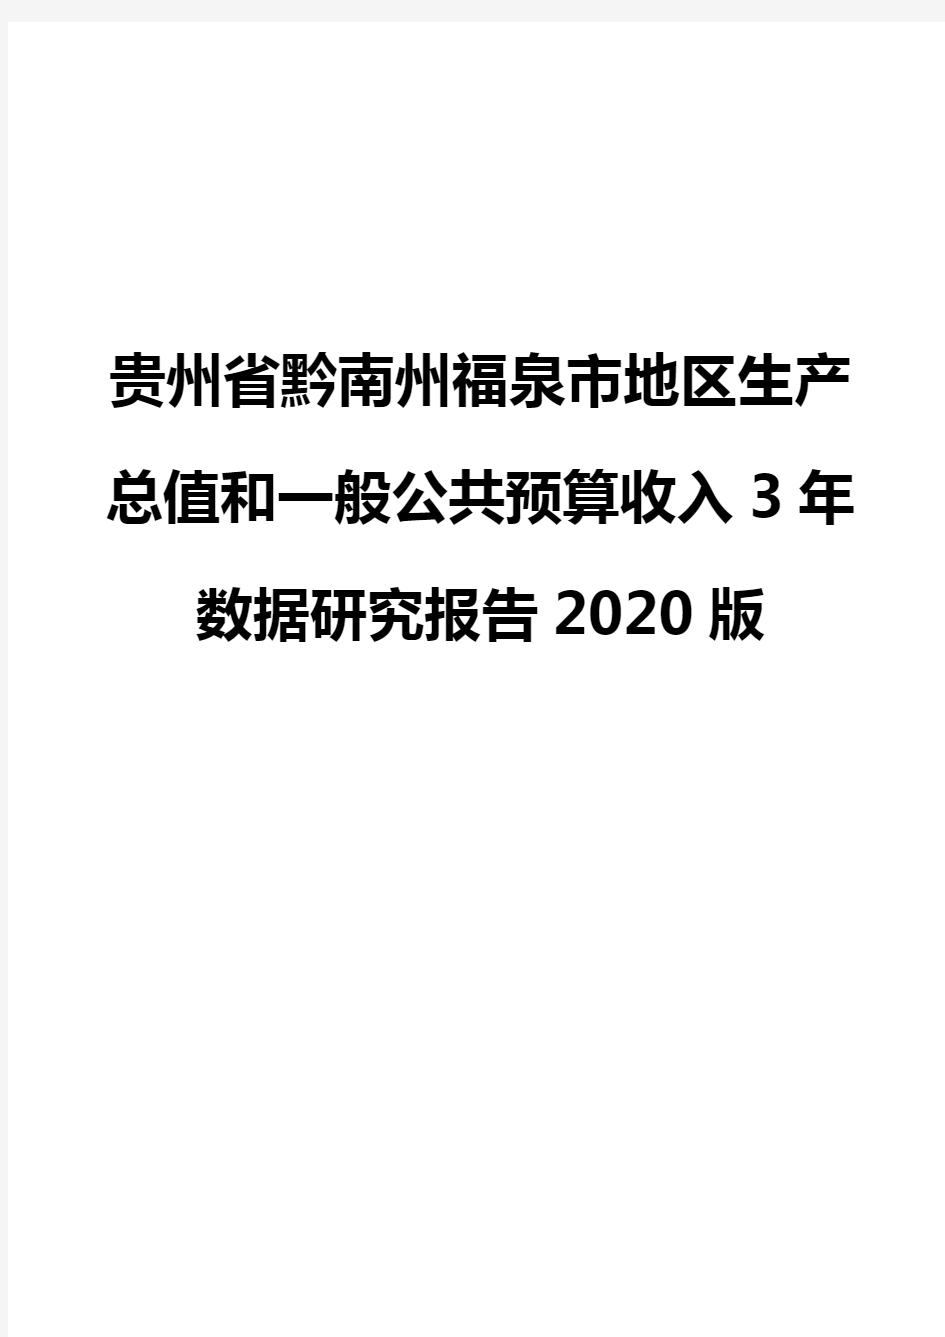 贵州省黔南州福泉市地区生产总值和一般公共预算收入3年数据研究报告2020版